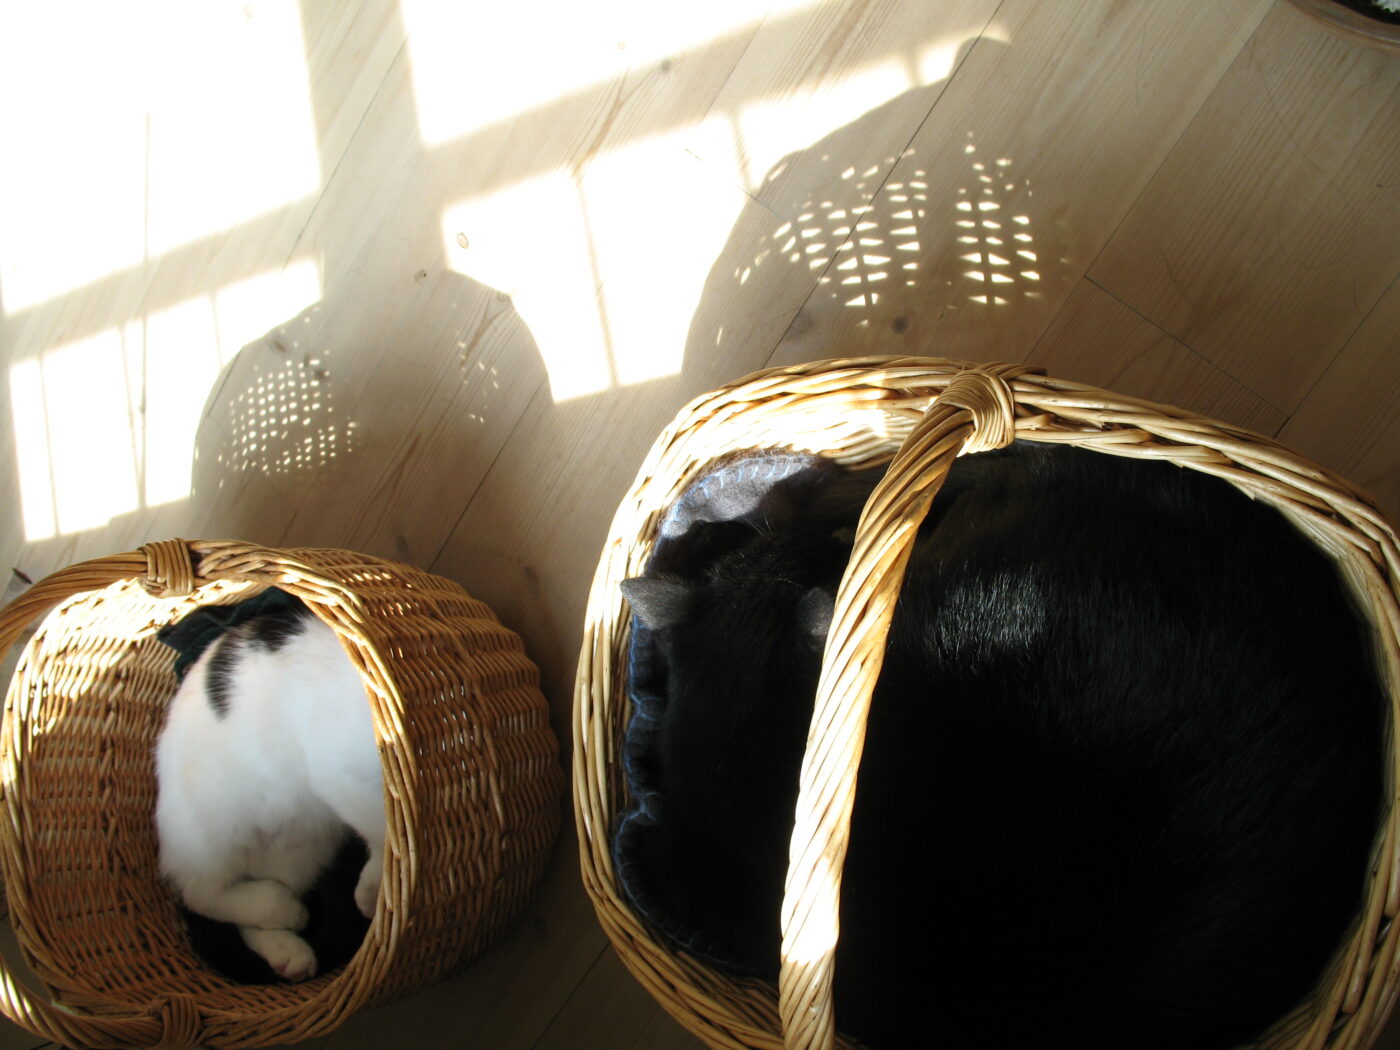 2 sovende katte ligger i hver sin kurv i solen.